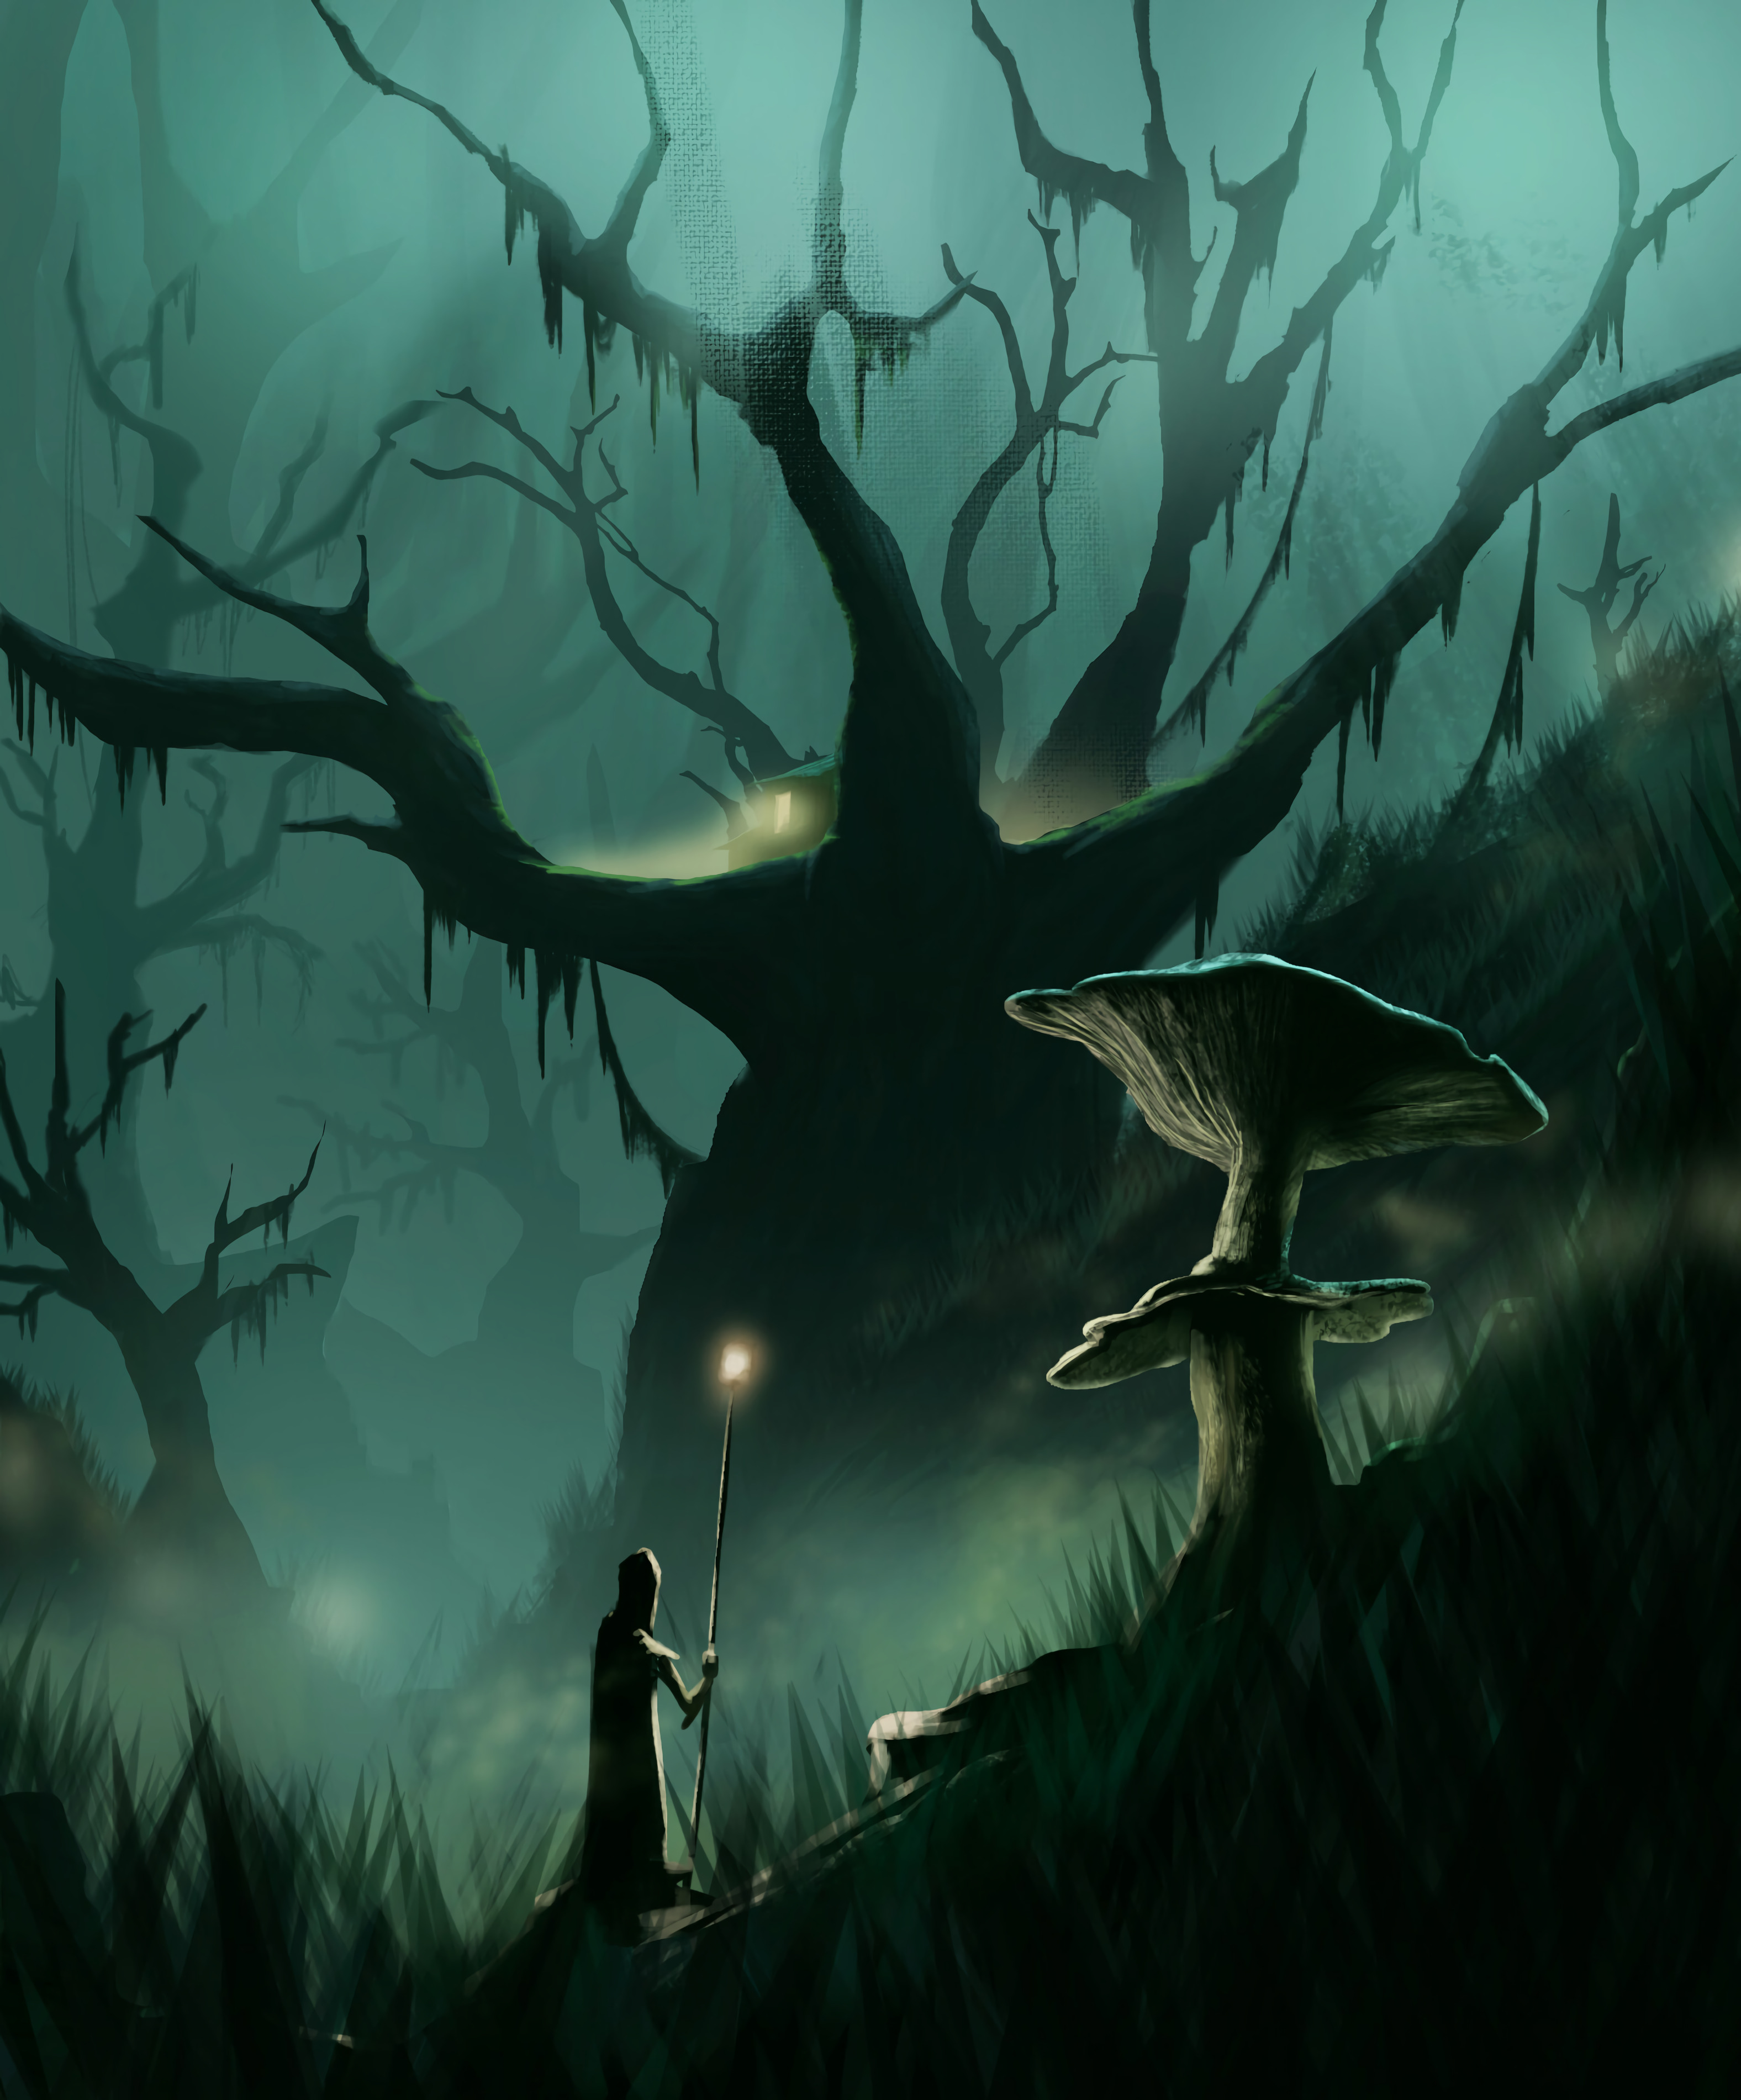 art, mushroom, silhouette, wood, tree, journey